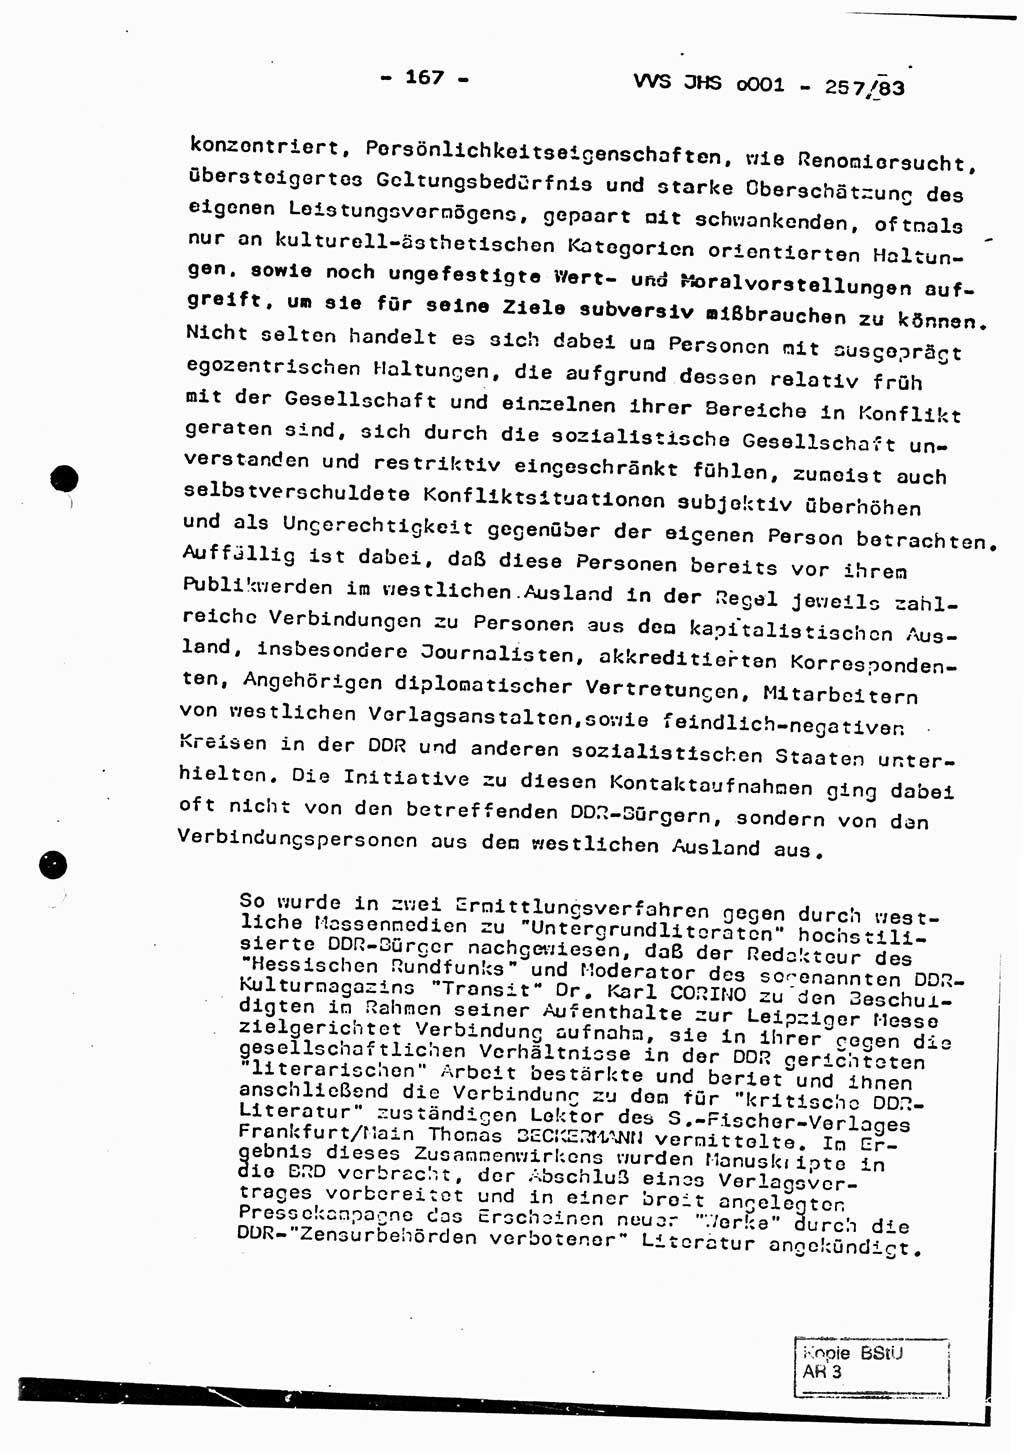 Dissertation, Oberst Helmut Lubas (BV Mdg.), Oberstleutnant Manfred Eschberger (HA IX), Oberleutnant Hans-Jürgen Ludwig (JHS), Ministerium für Staatssicherheit (MfS) [Deutsche Demokratische Republik (DDR)], Juristische Hochschule (JHS), Vertrauliche Verschlußsache (VVS) o001-257/83, Potsdam 1983, Seite 167 (Diss. MfS DDR JHS VVS o001-257/83 1983, S. 167)